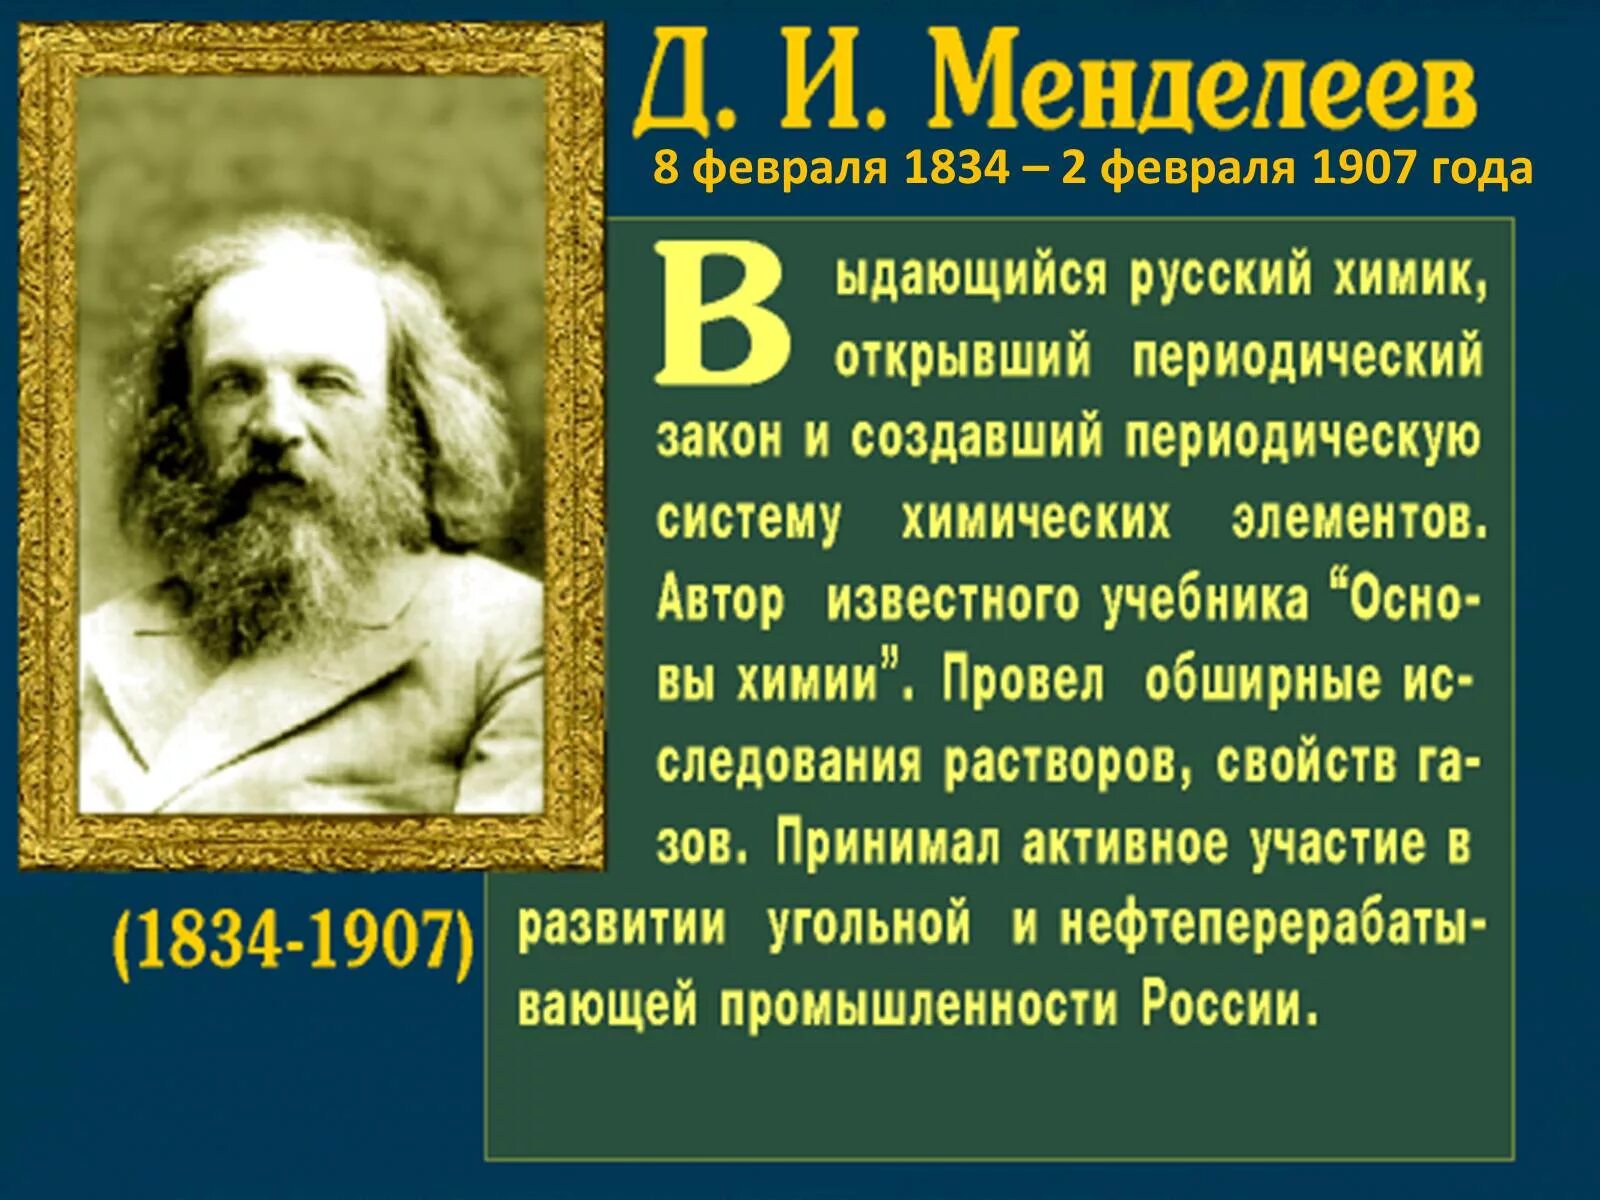 Факты из жизни ученых. Дмитрия Менделеева(1834—1907). Менделеев русский ученый энциклопедист.